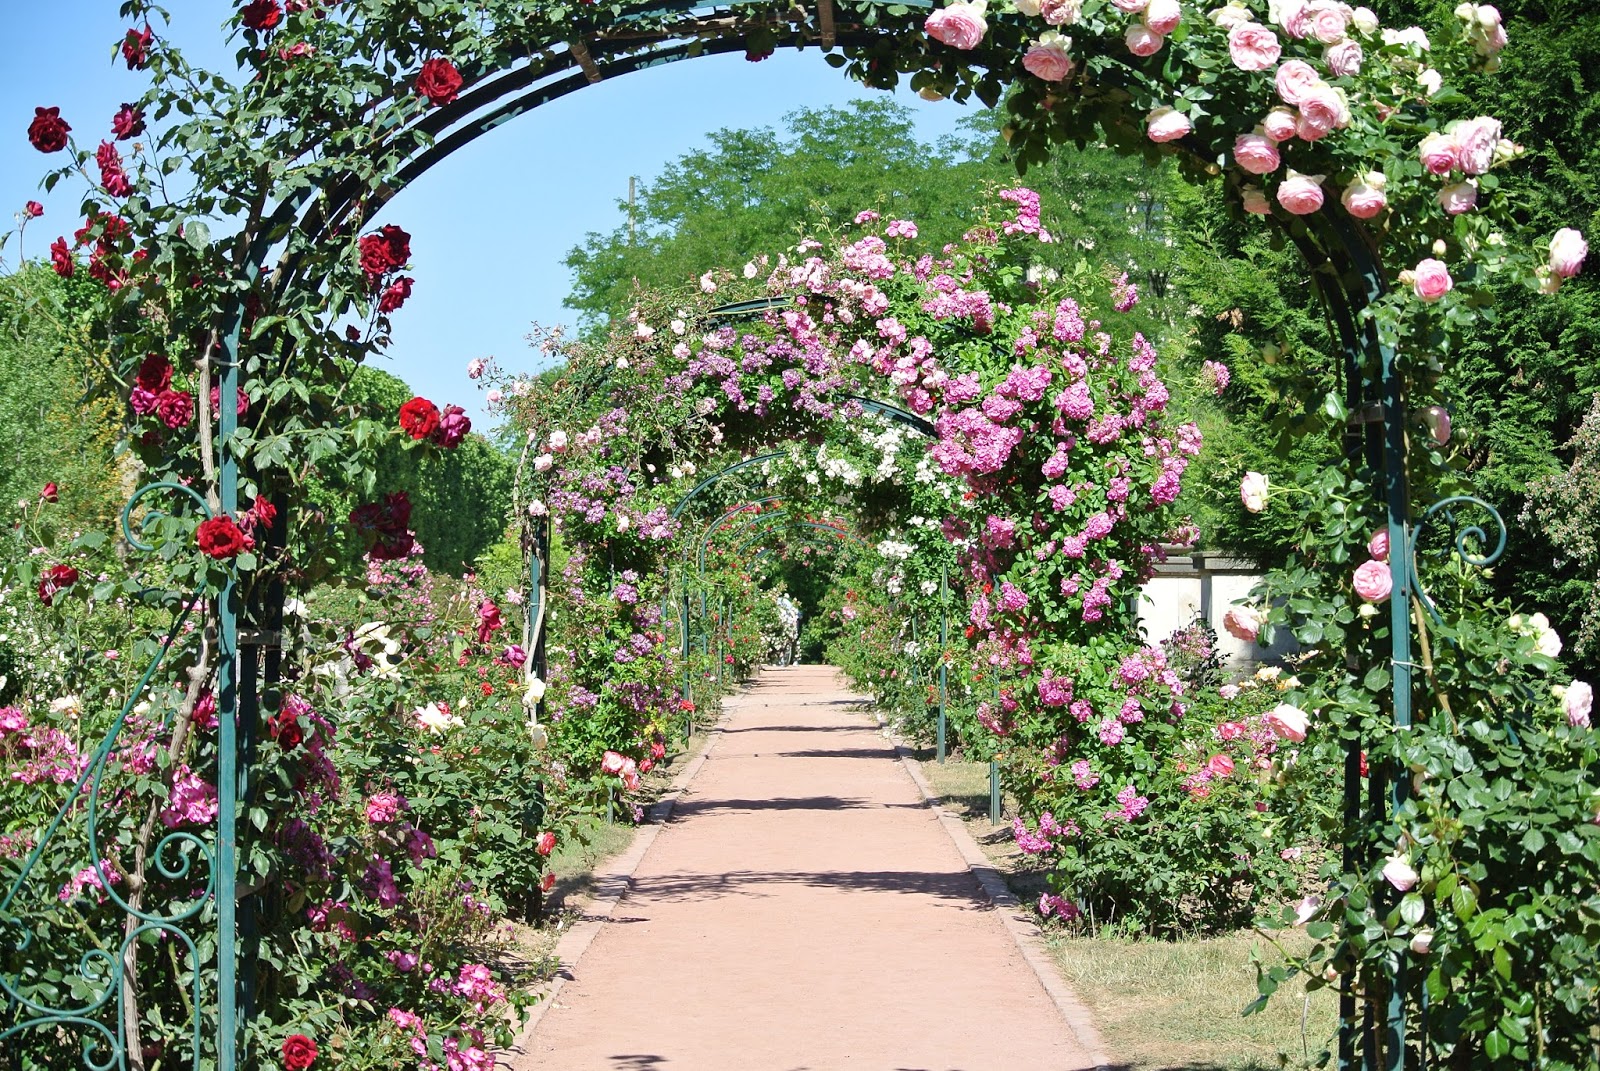 Le blog de Gabrielle Aznar: La roseraie du jardin des plantes ♦ Paris - Roses%2BjarDin%2BDes%2Bplantes%2Bparis%2Bgabrielle%2Baznar%2Bcopyright